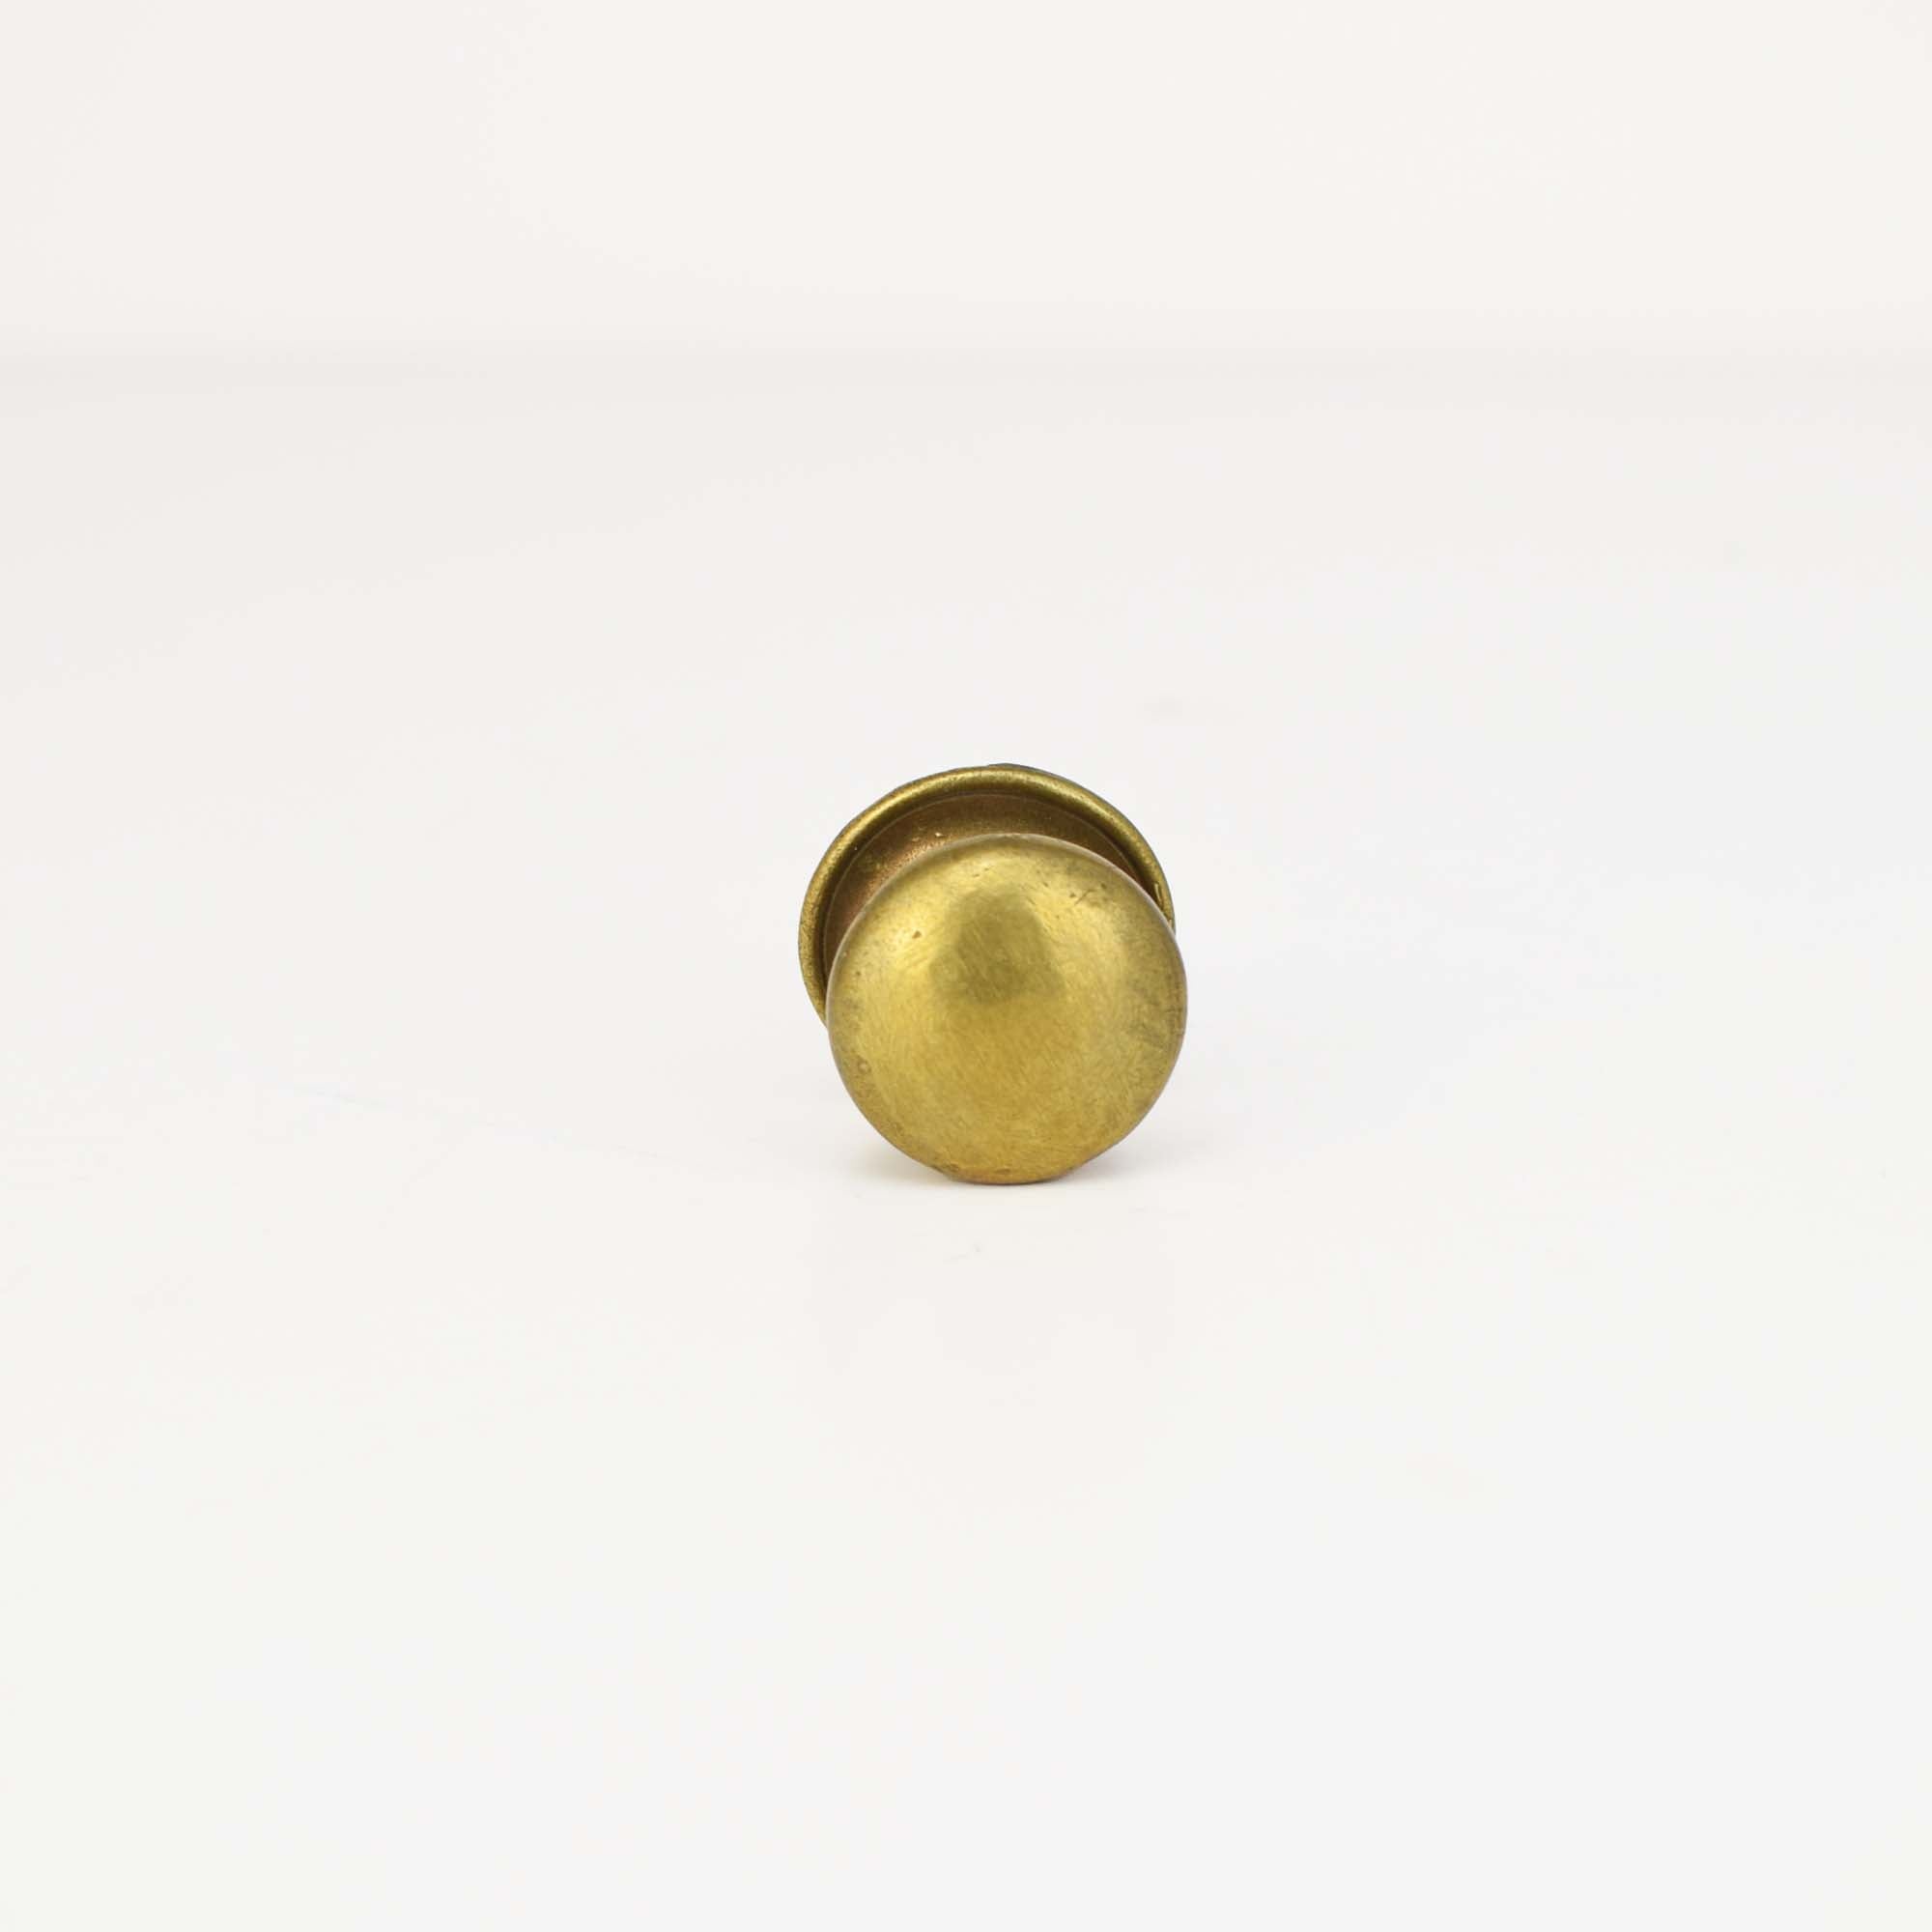 Small Brass Round Knob - Proper Copper Design